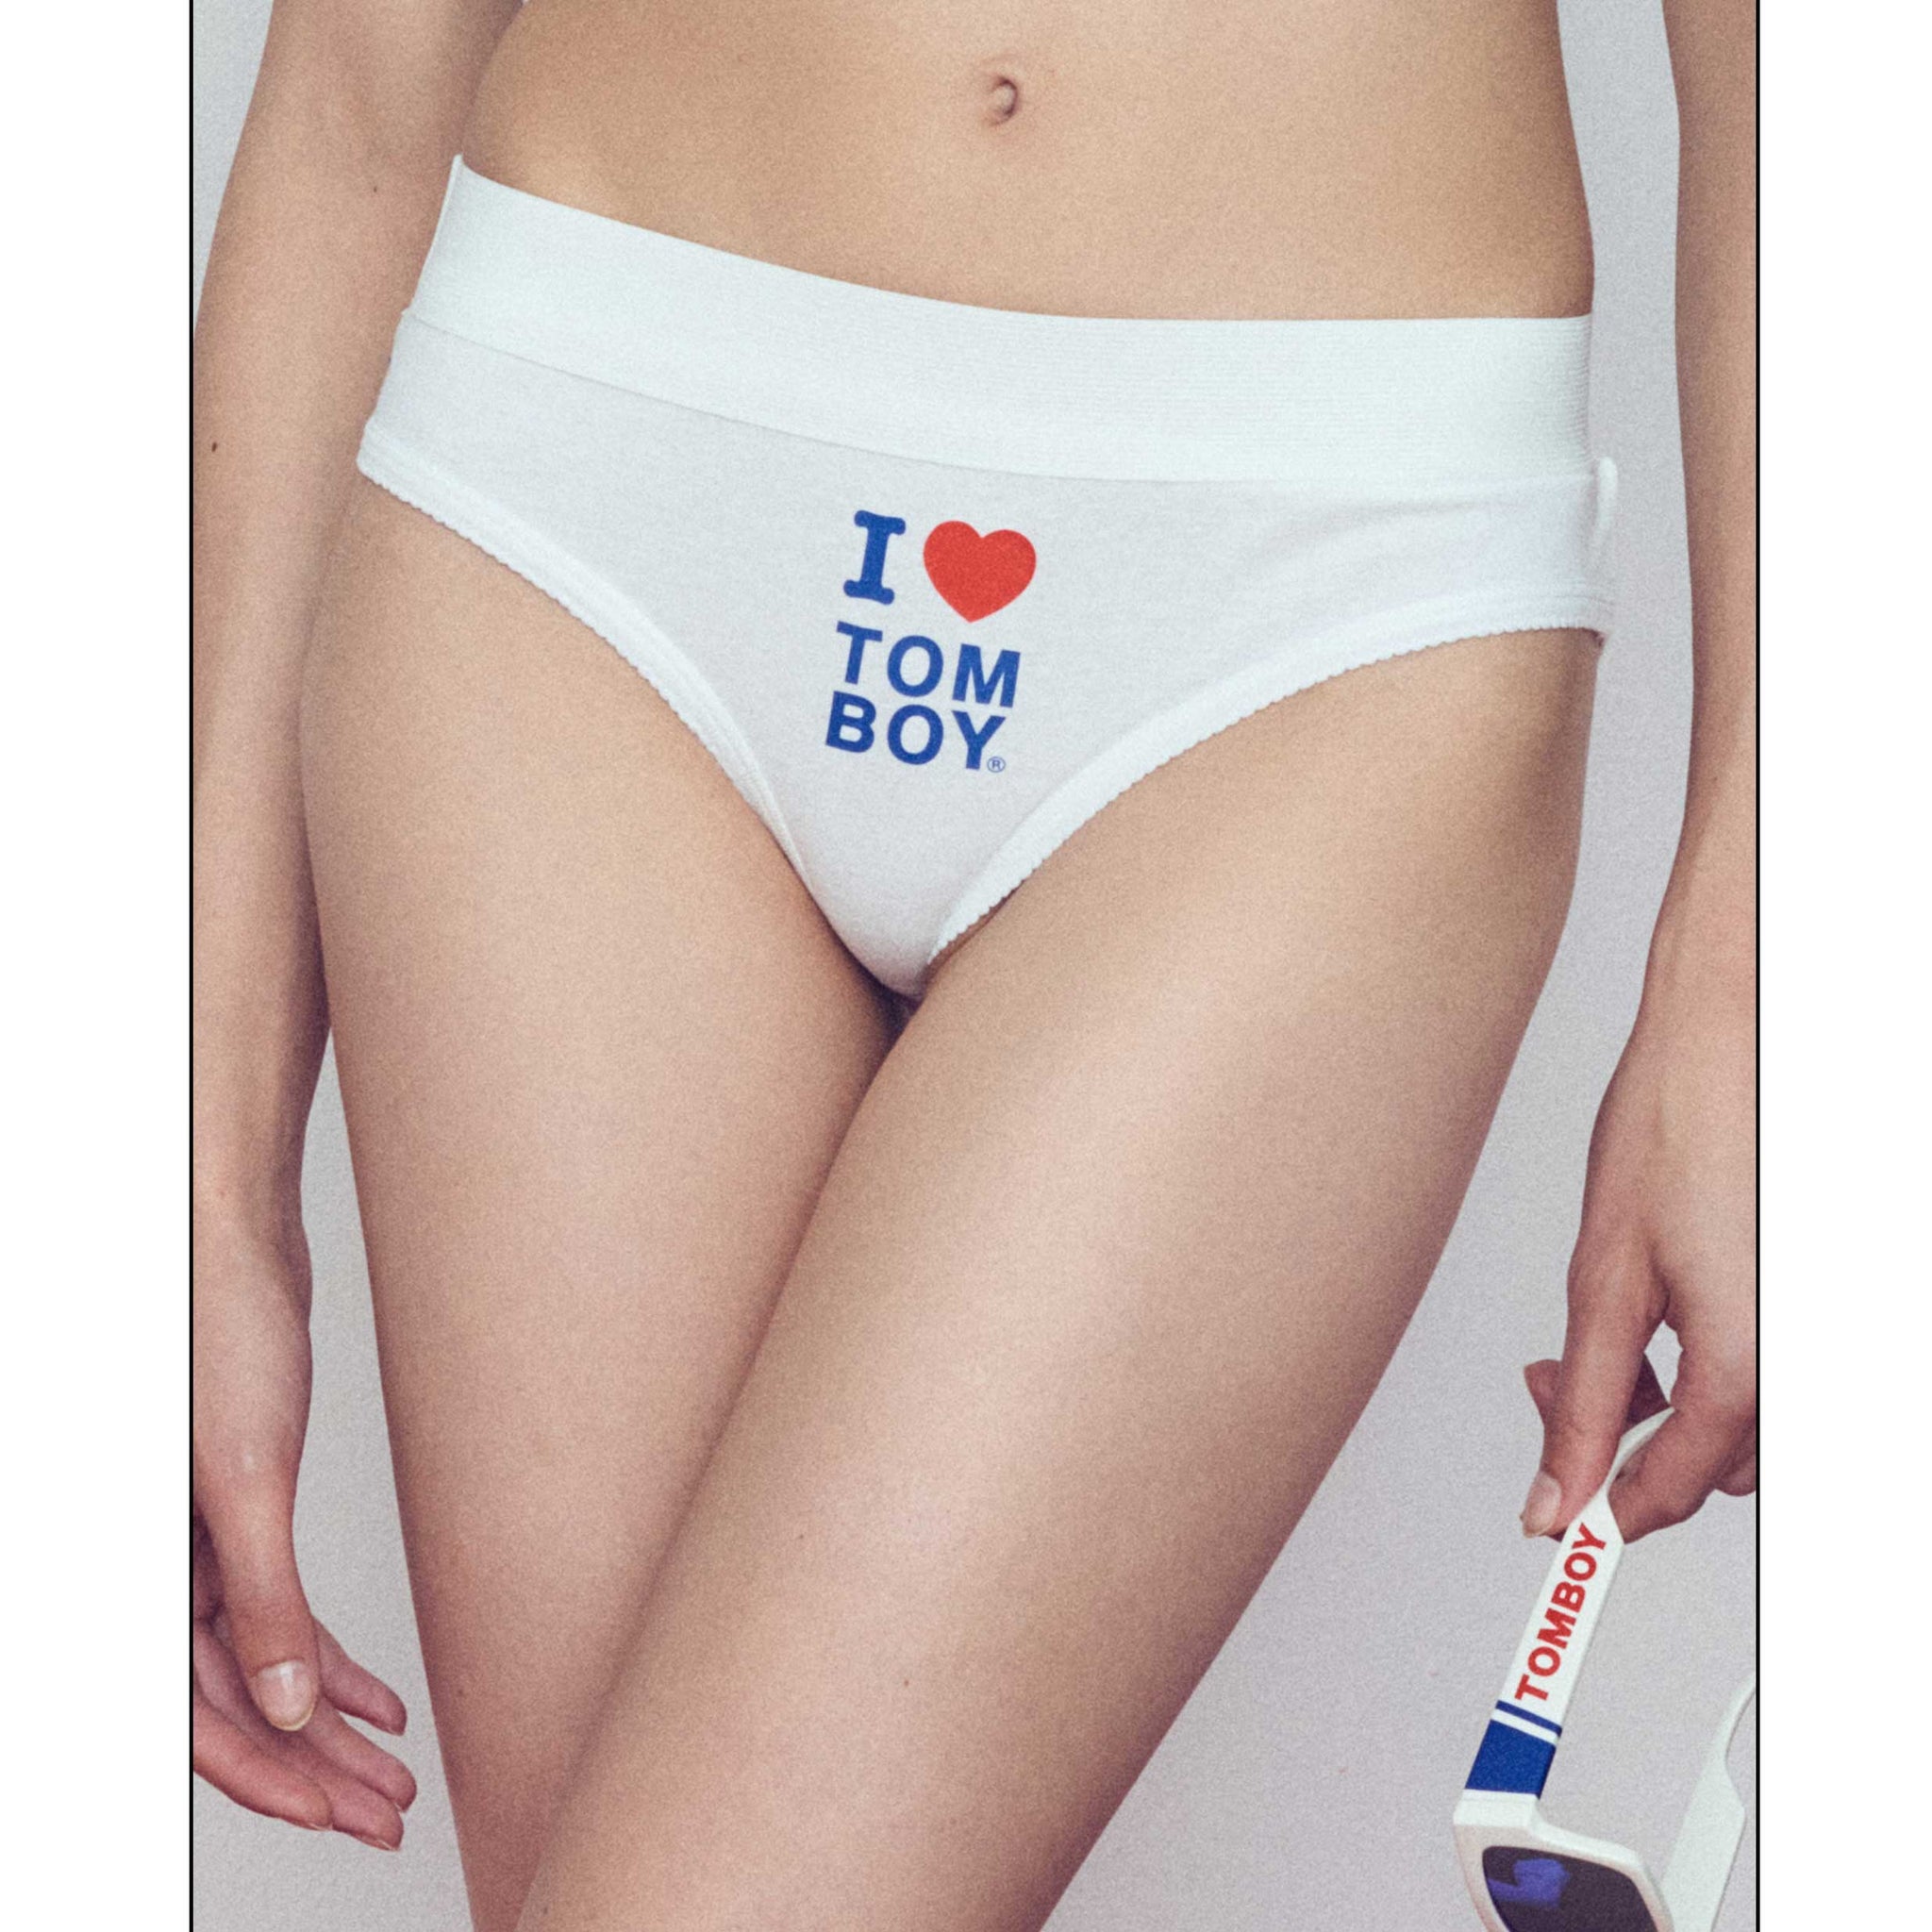 TomboyX Boy Short Underwear For Women, Cotton India